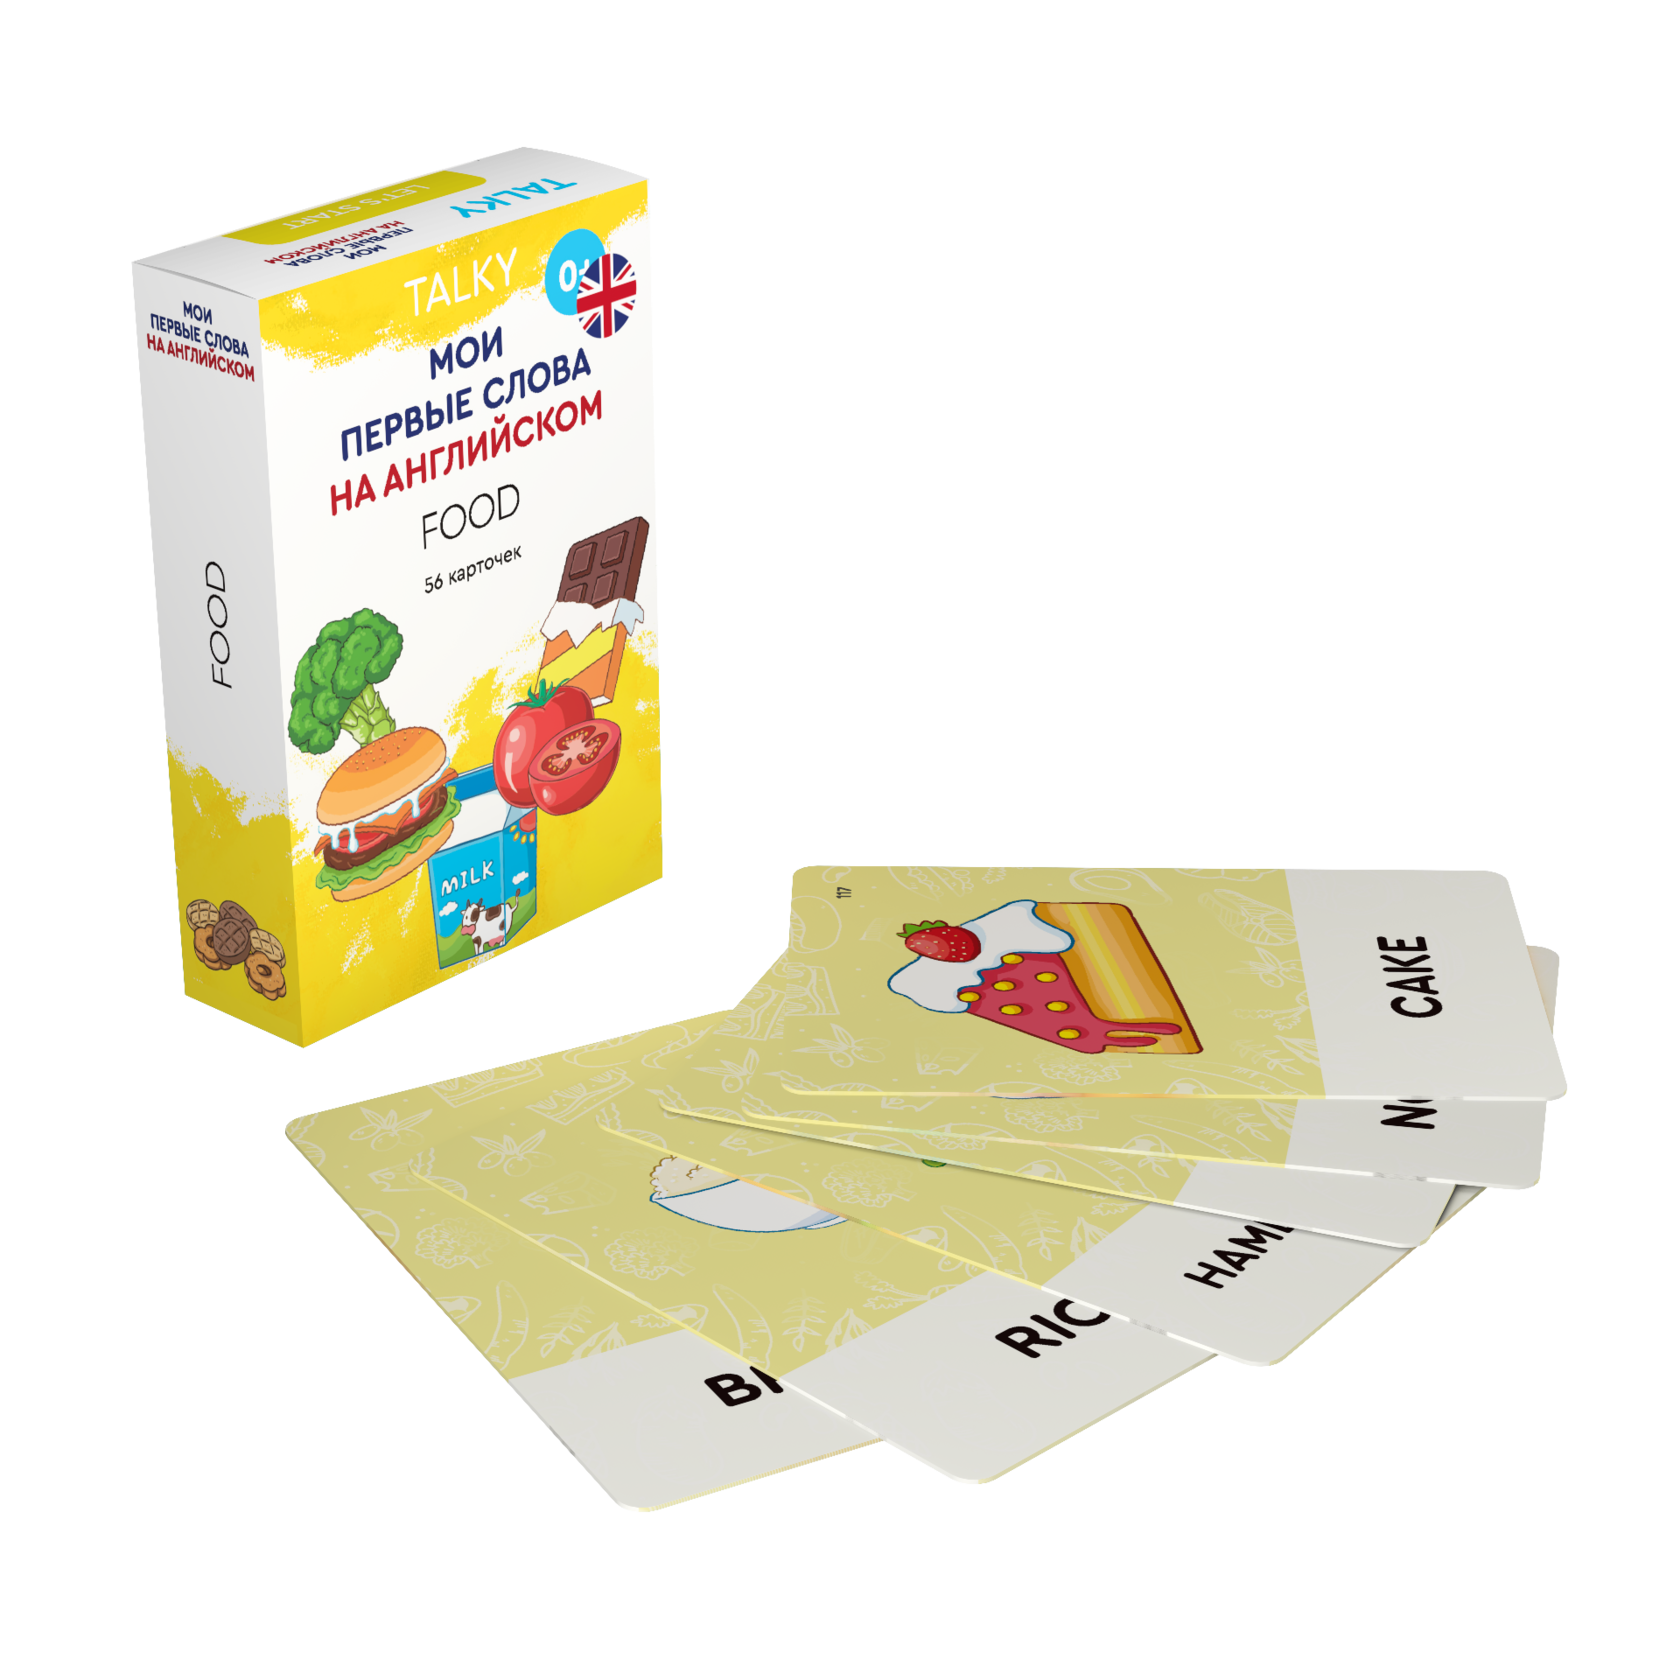 Развивающие карточки для детей LUMICUBE для TALKY, на англ. языке, еда, 56шт. KDTKE02-FOOD lumicube умные карточки talky на русском и английском языке в городе 42 шт